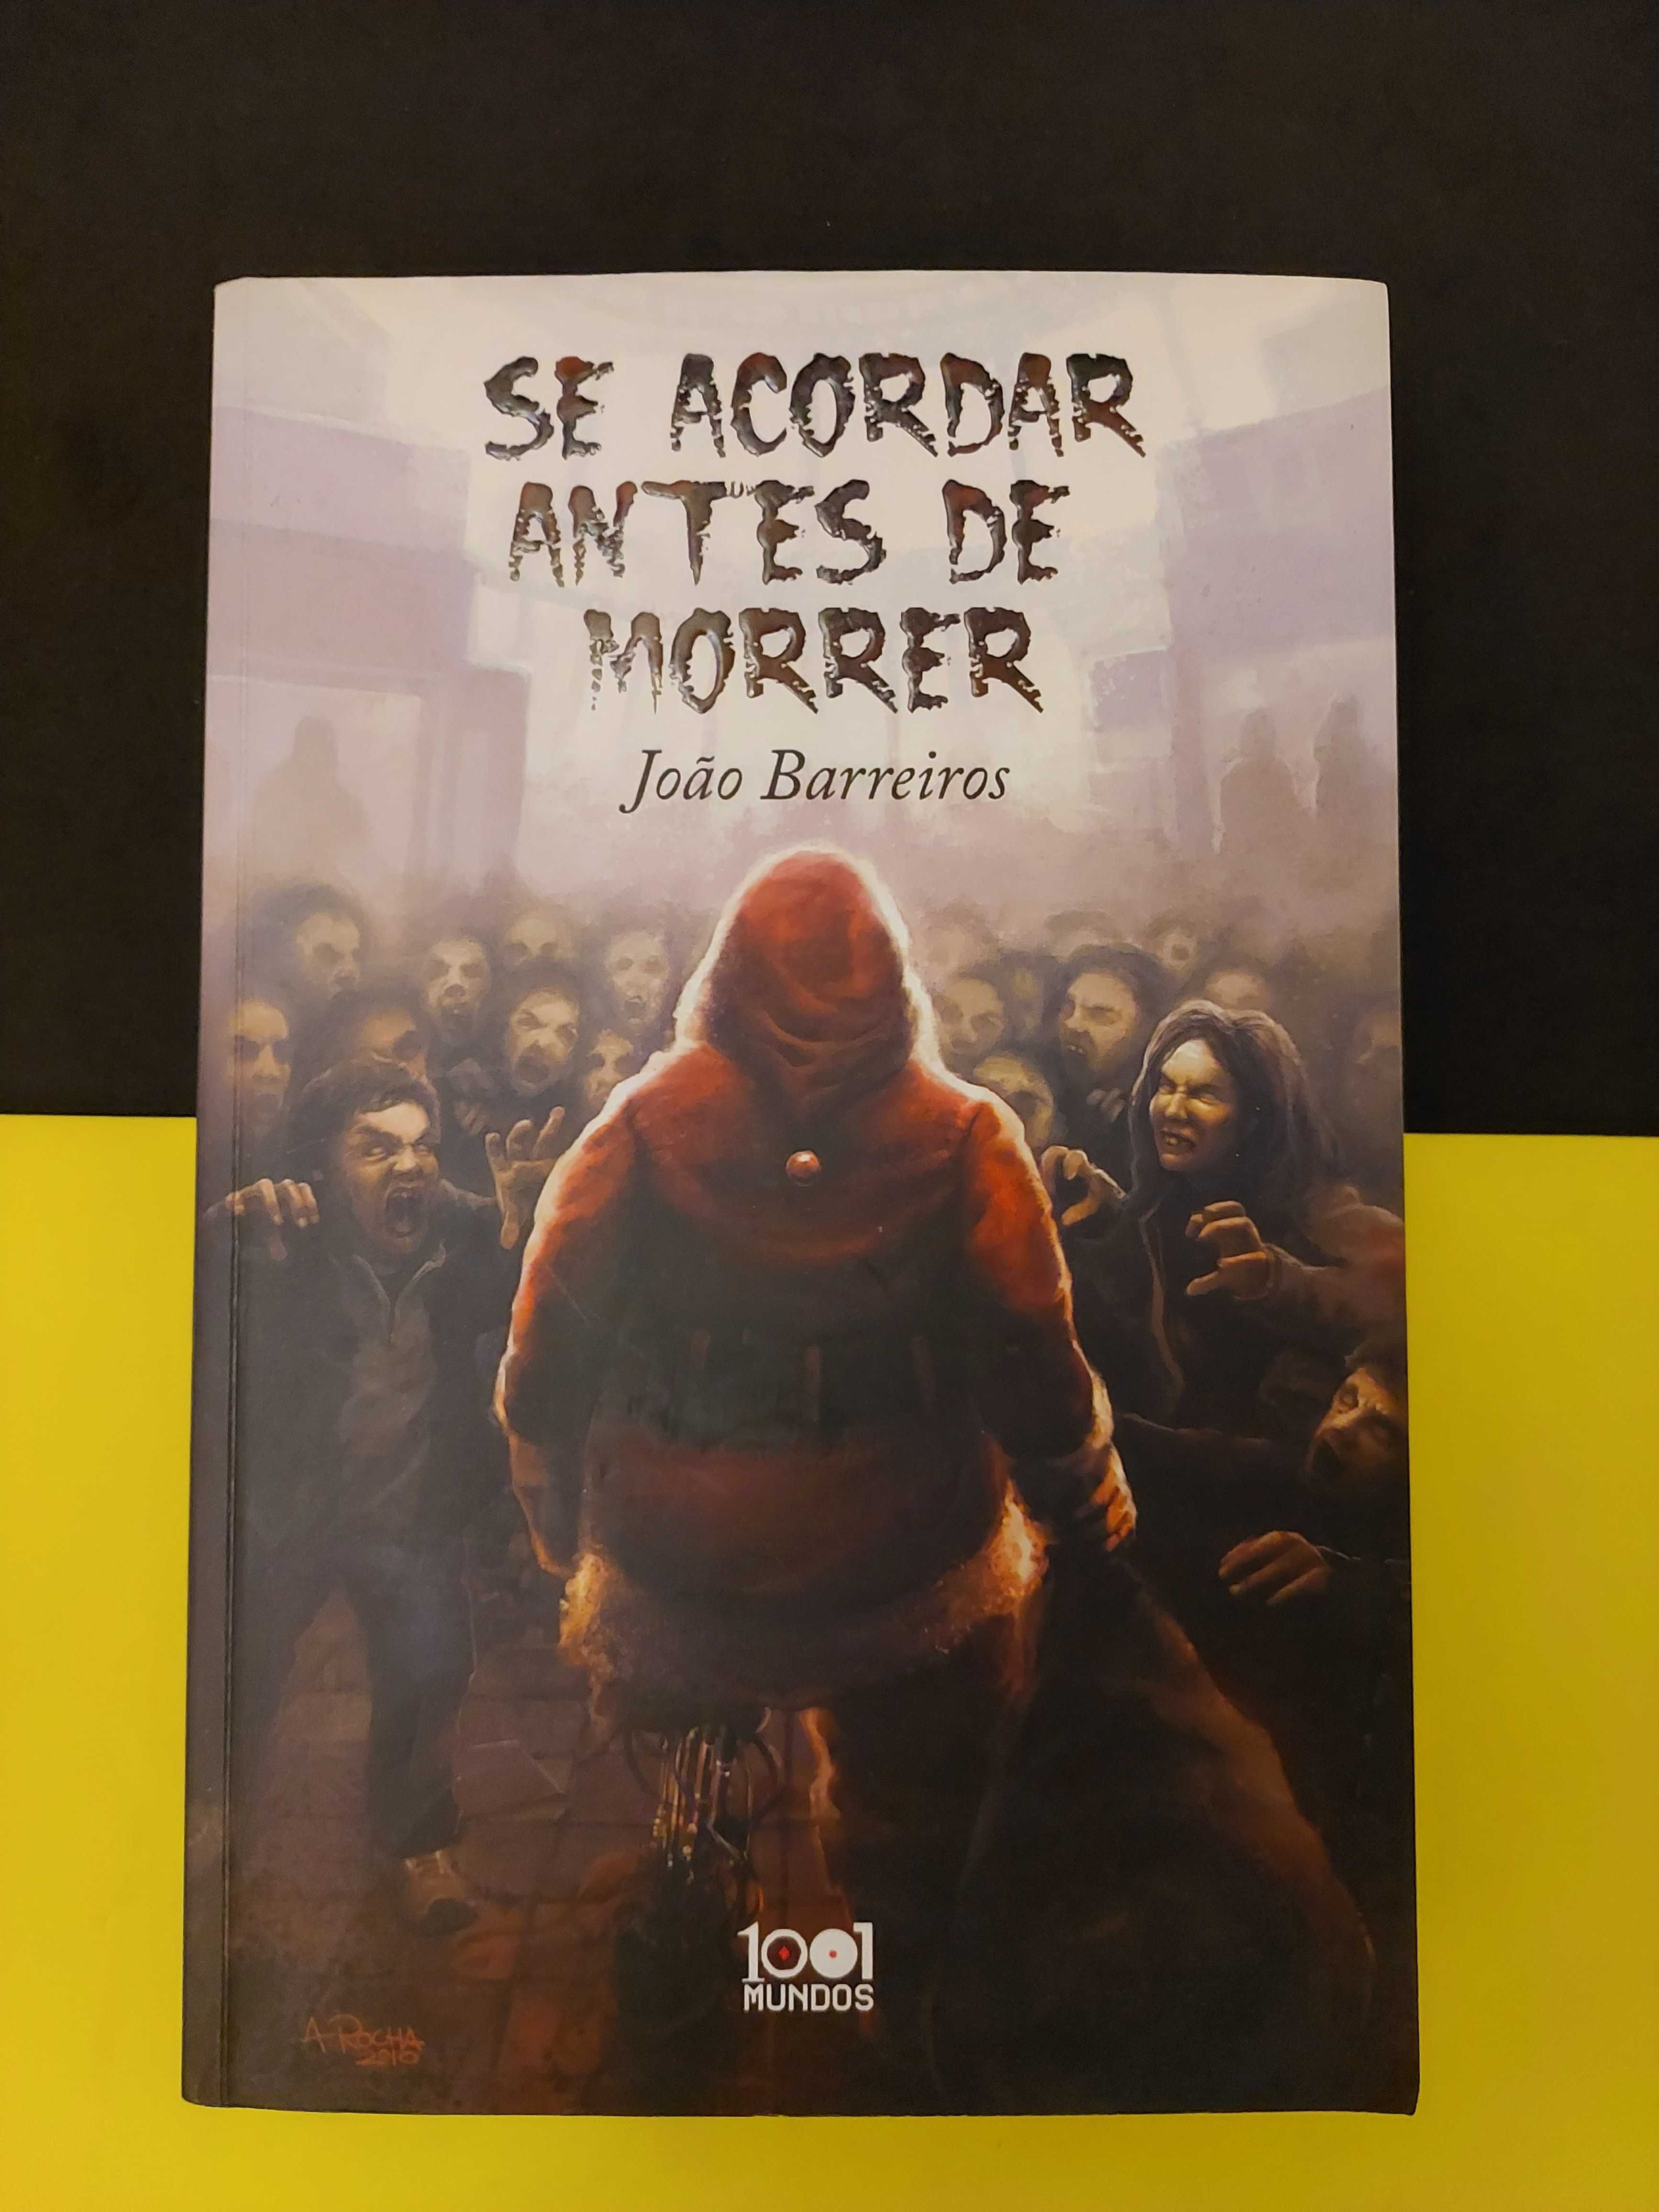 João Barreiros - Se acordar antes de morrer